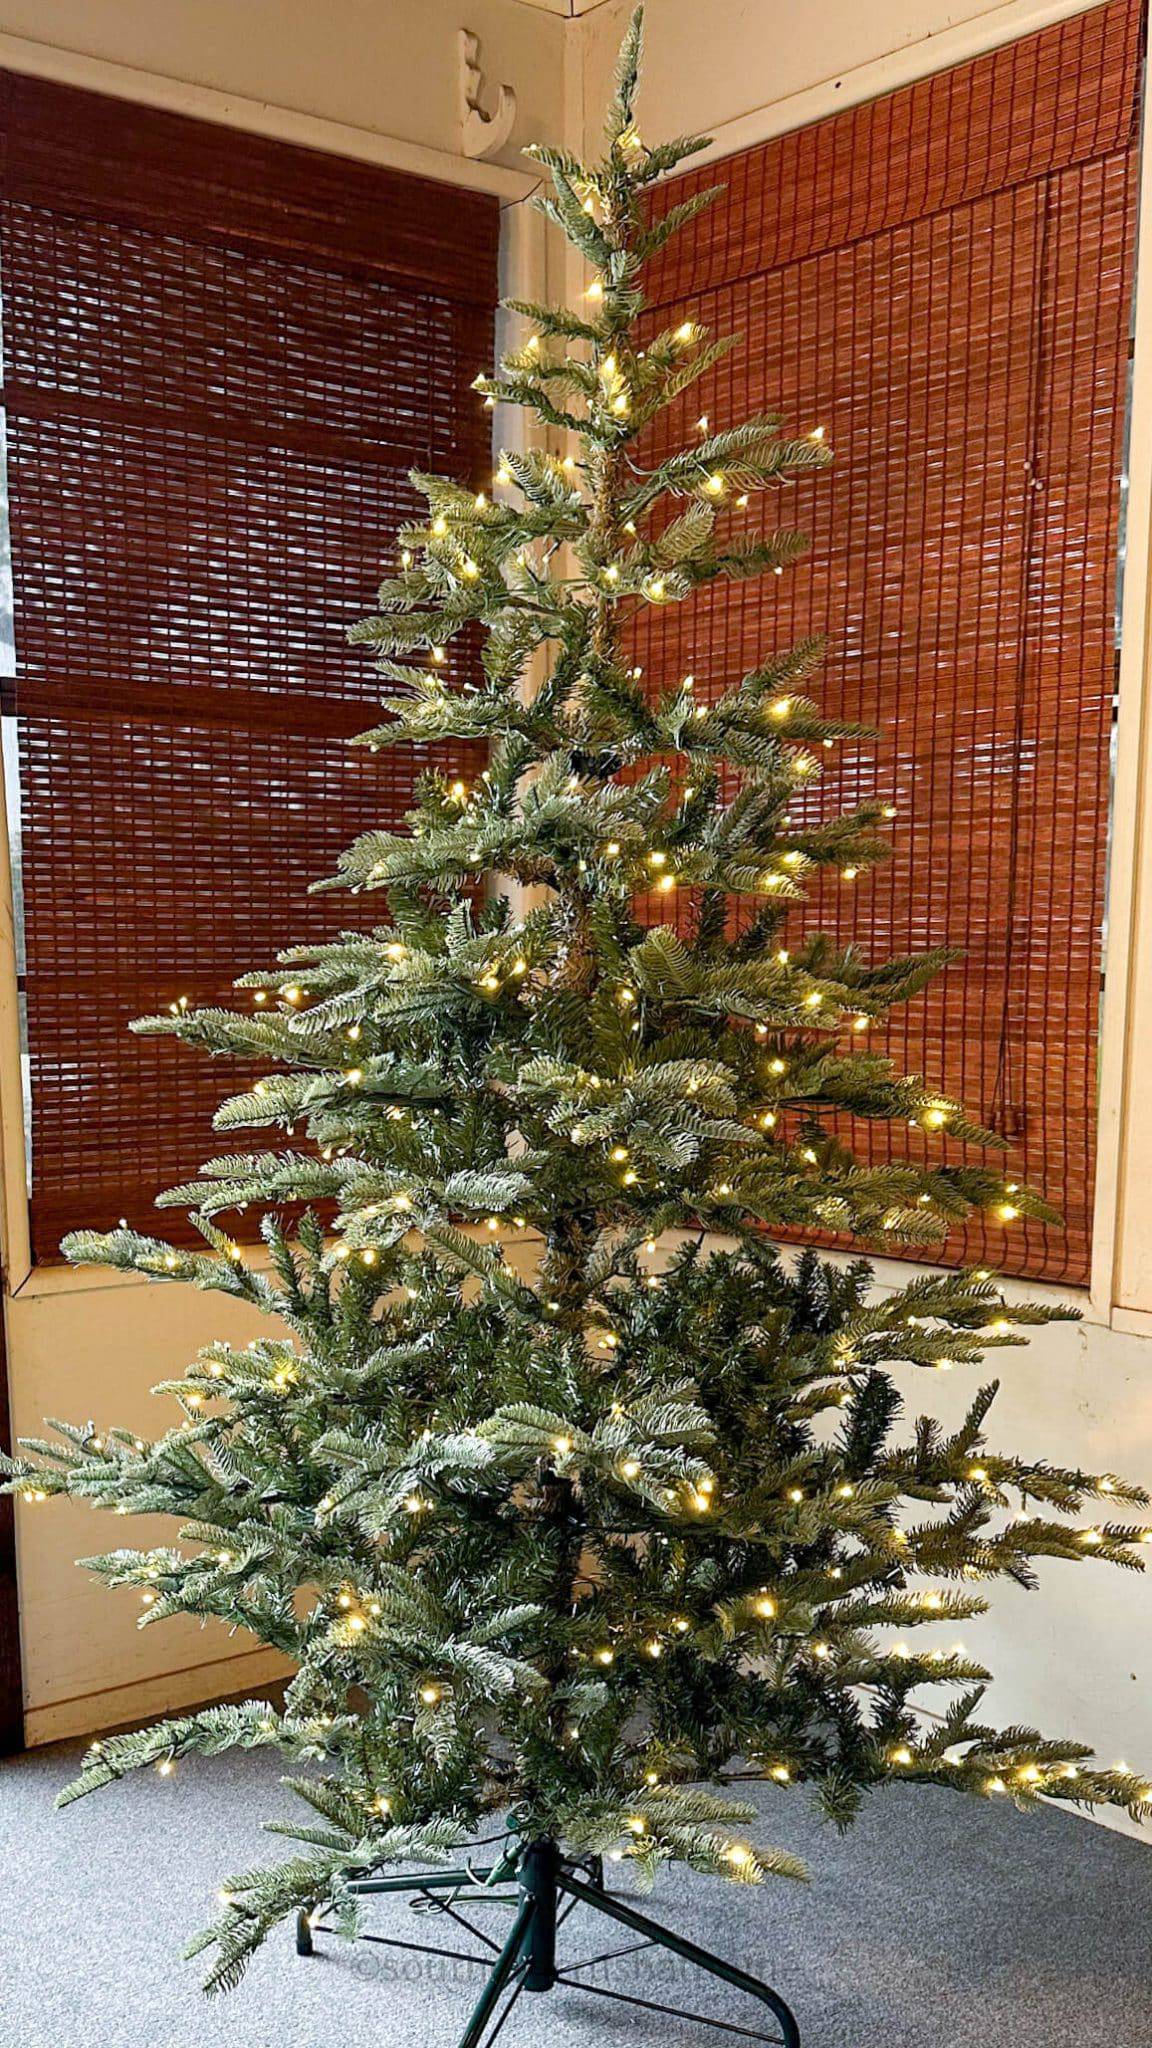 King of Christmas Christmas Tree